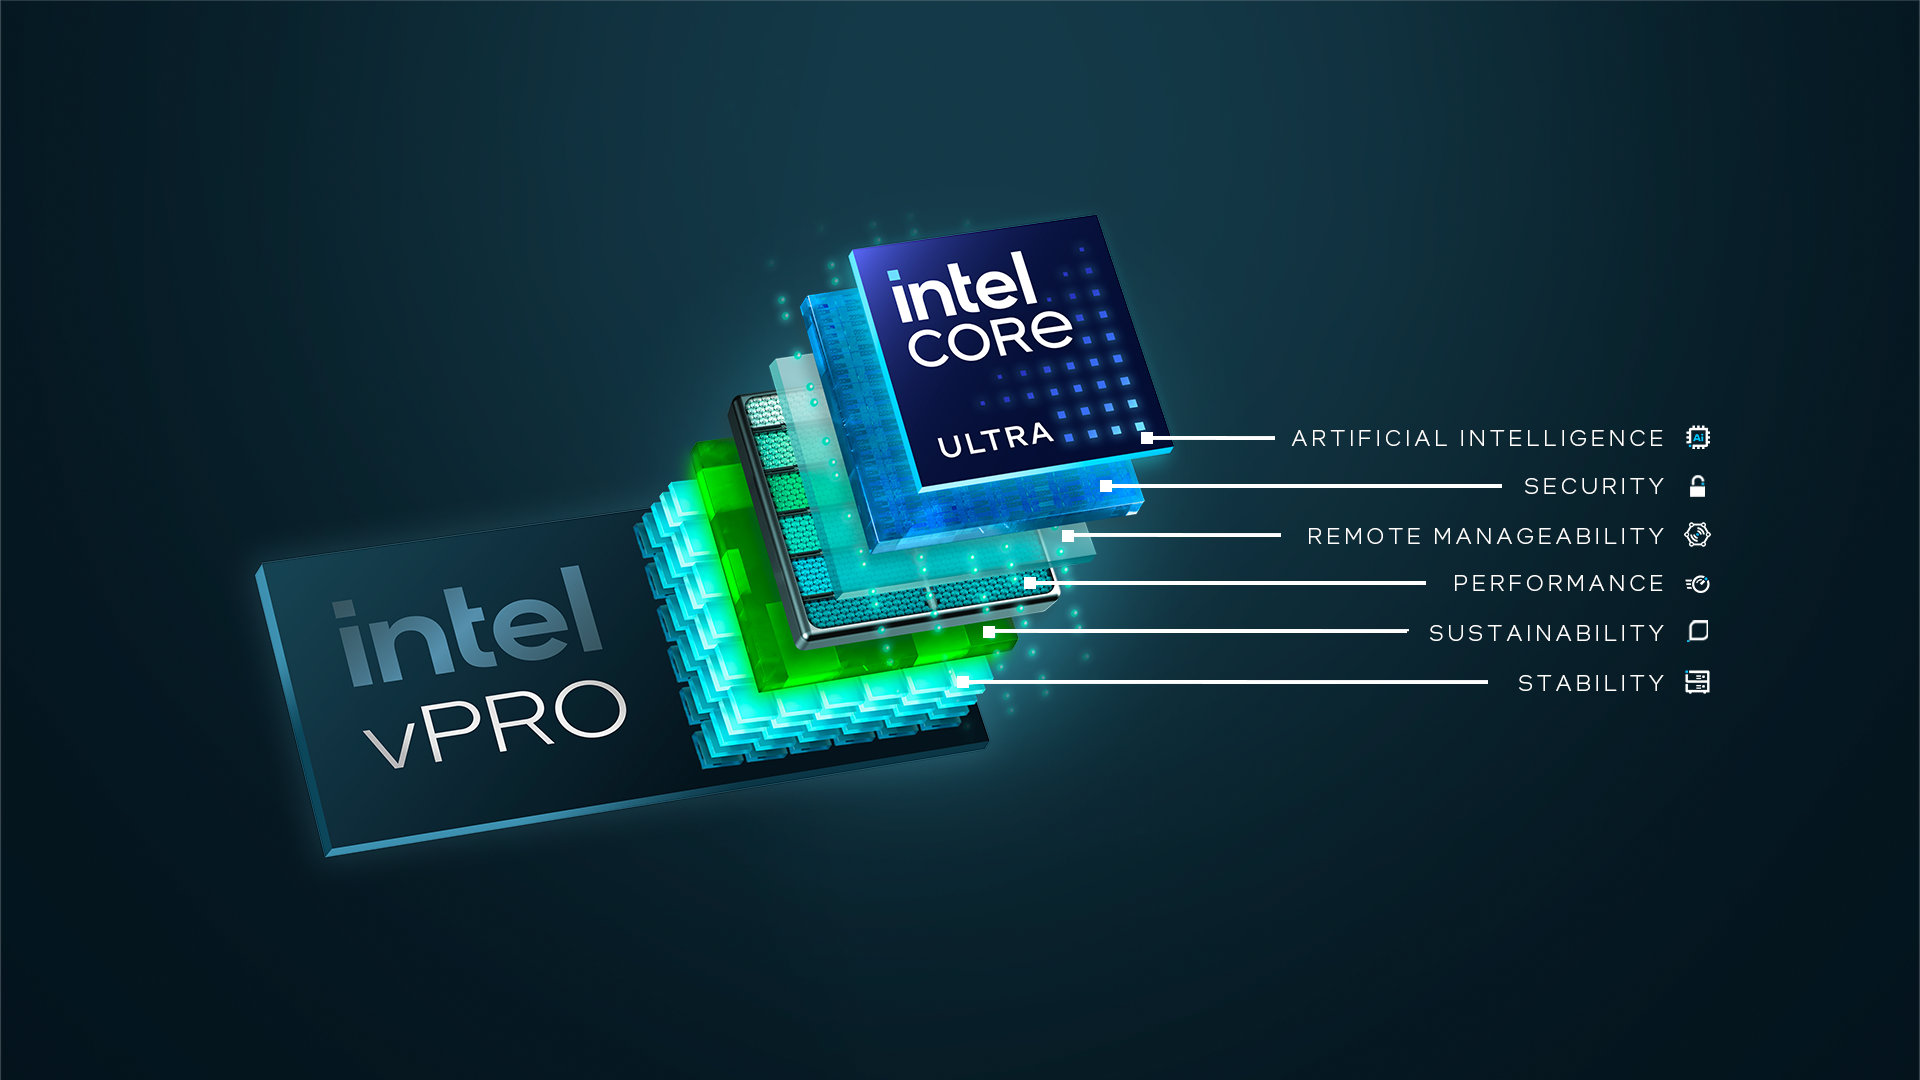 [PR] Intel mang AI PC trang bị chip Intel Core Ultra đến doanh nghiệp qua nền tảng Intel vPro mới - Image 1